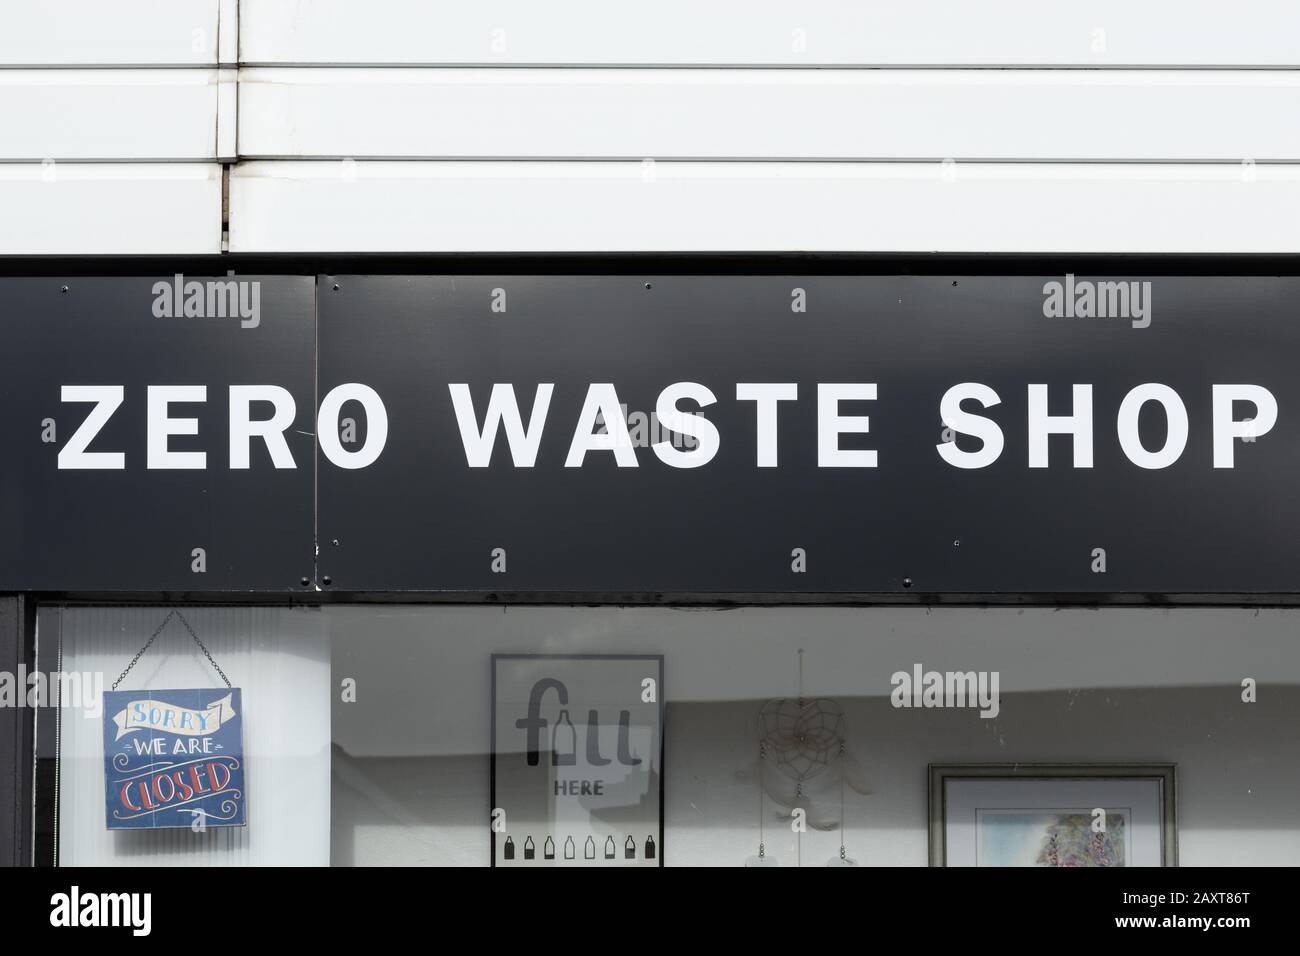 Zero waste shop selling sustainable and plastic-free goods, UK Stock Photo